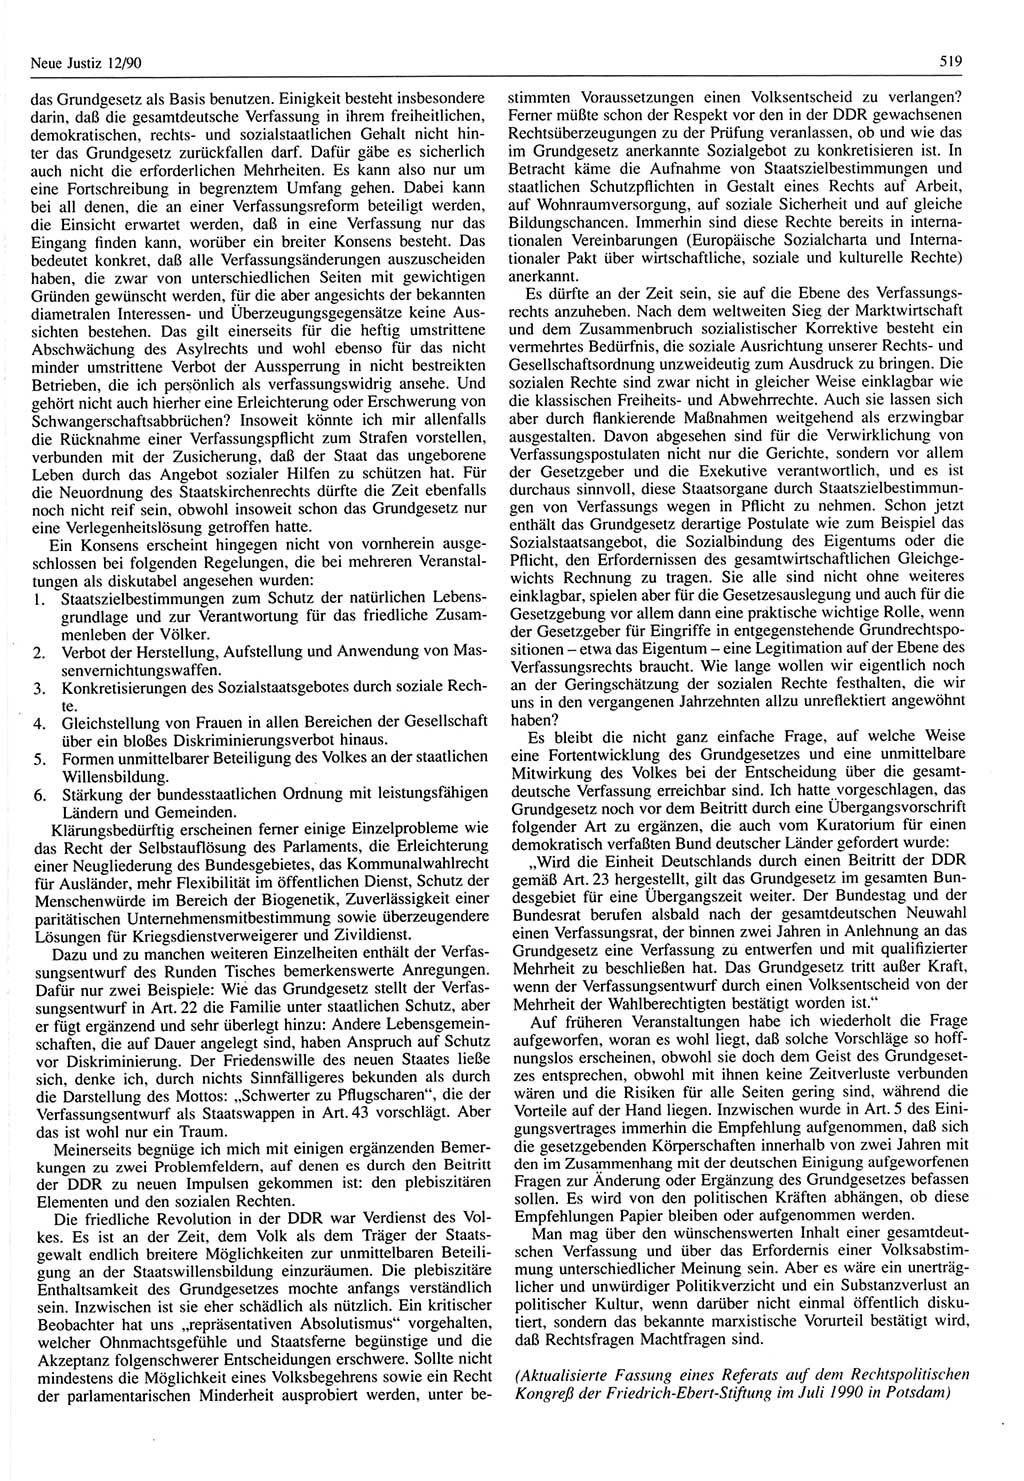 Neue Justiz (NJ), Zeitschrift für Rechtsetzung und Rechtsanwendung [Deutsche Demokratische Republik (DDR)], 44. Jahrgang 1990, Seite 519 (NJ DDR 1990, S. 519)